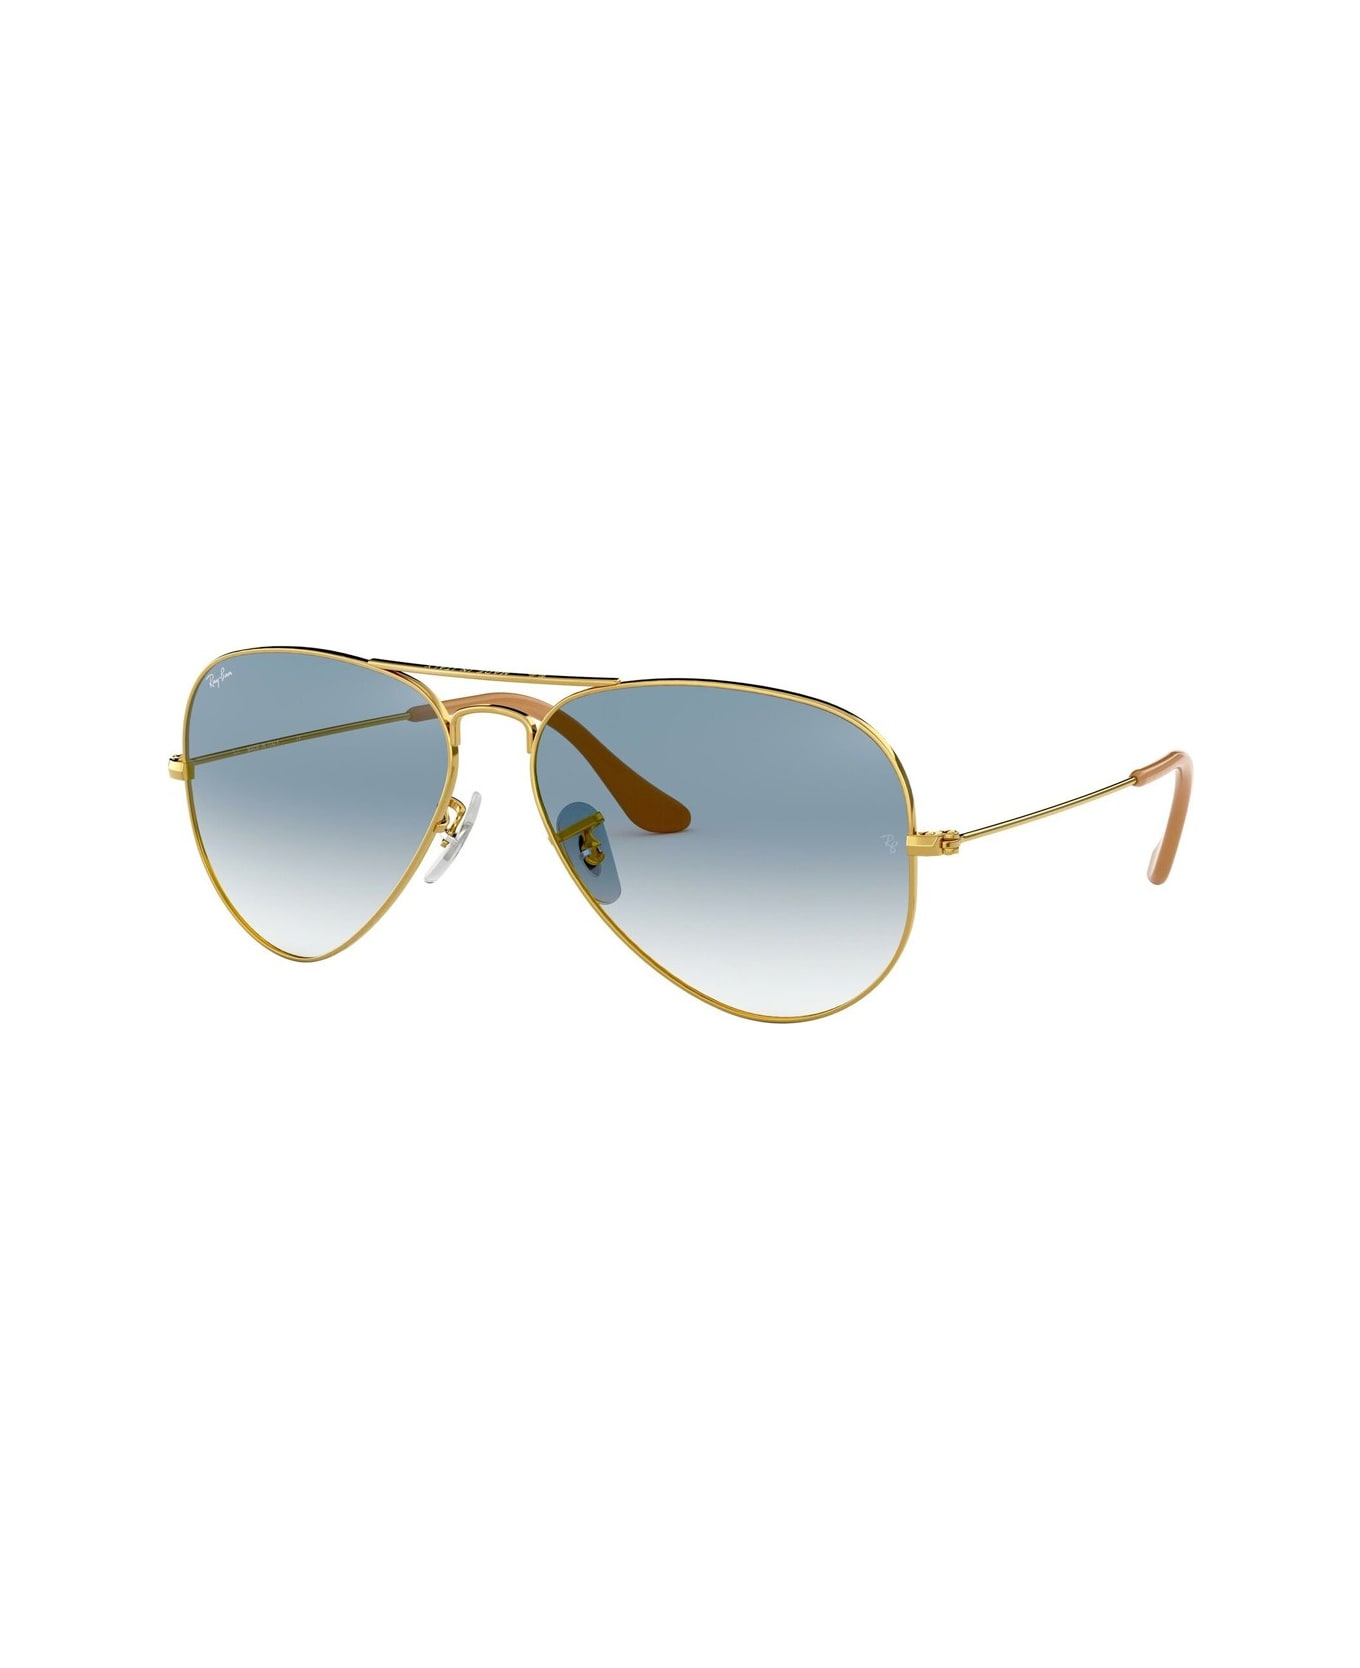 Ray-Ban Aviator 3025 Sunglasses - Oro